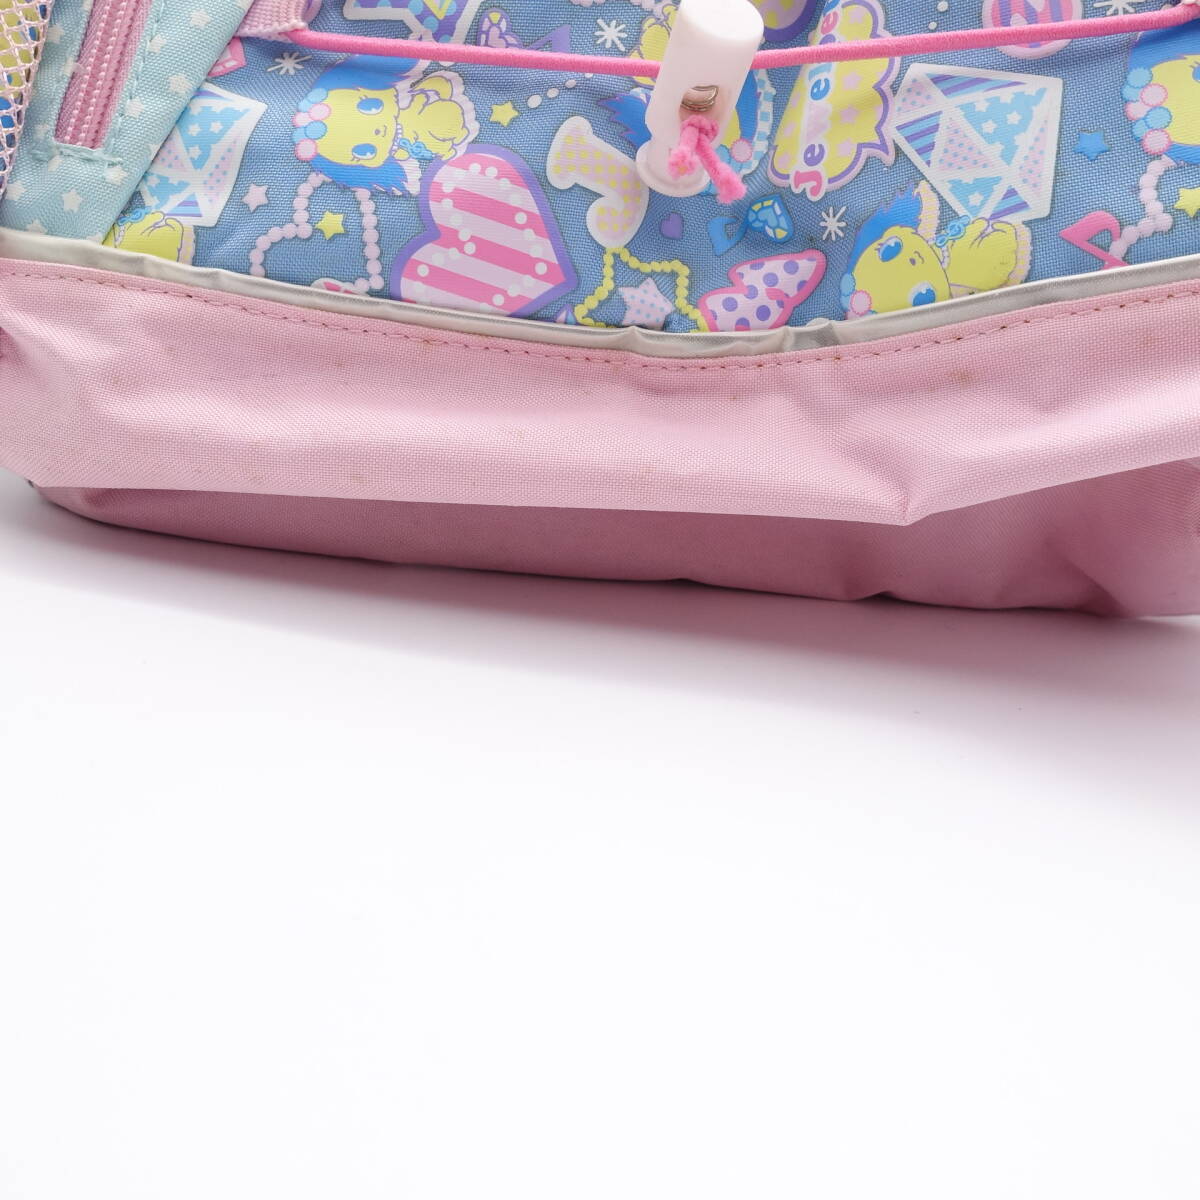 Sanrio ジュエルペット サファイア リュックサック 子供用 バッグ 中古 汚れあり JEWELPET サンリオ/14937_画像4